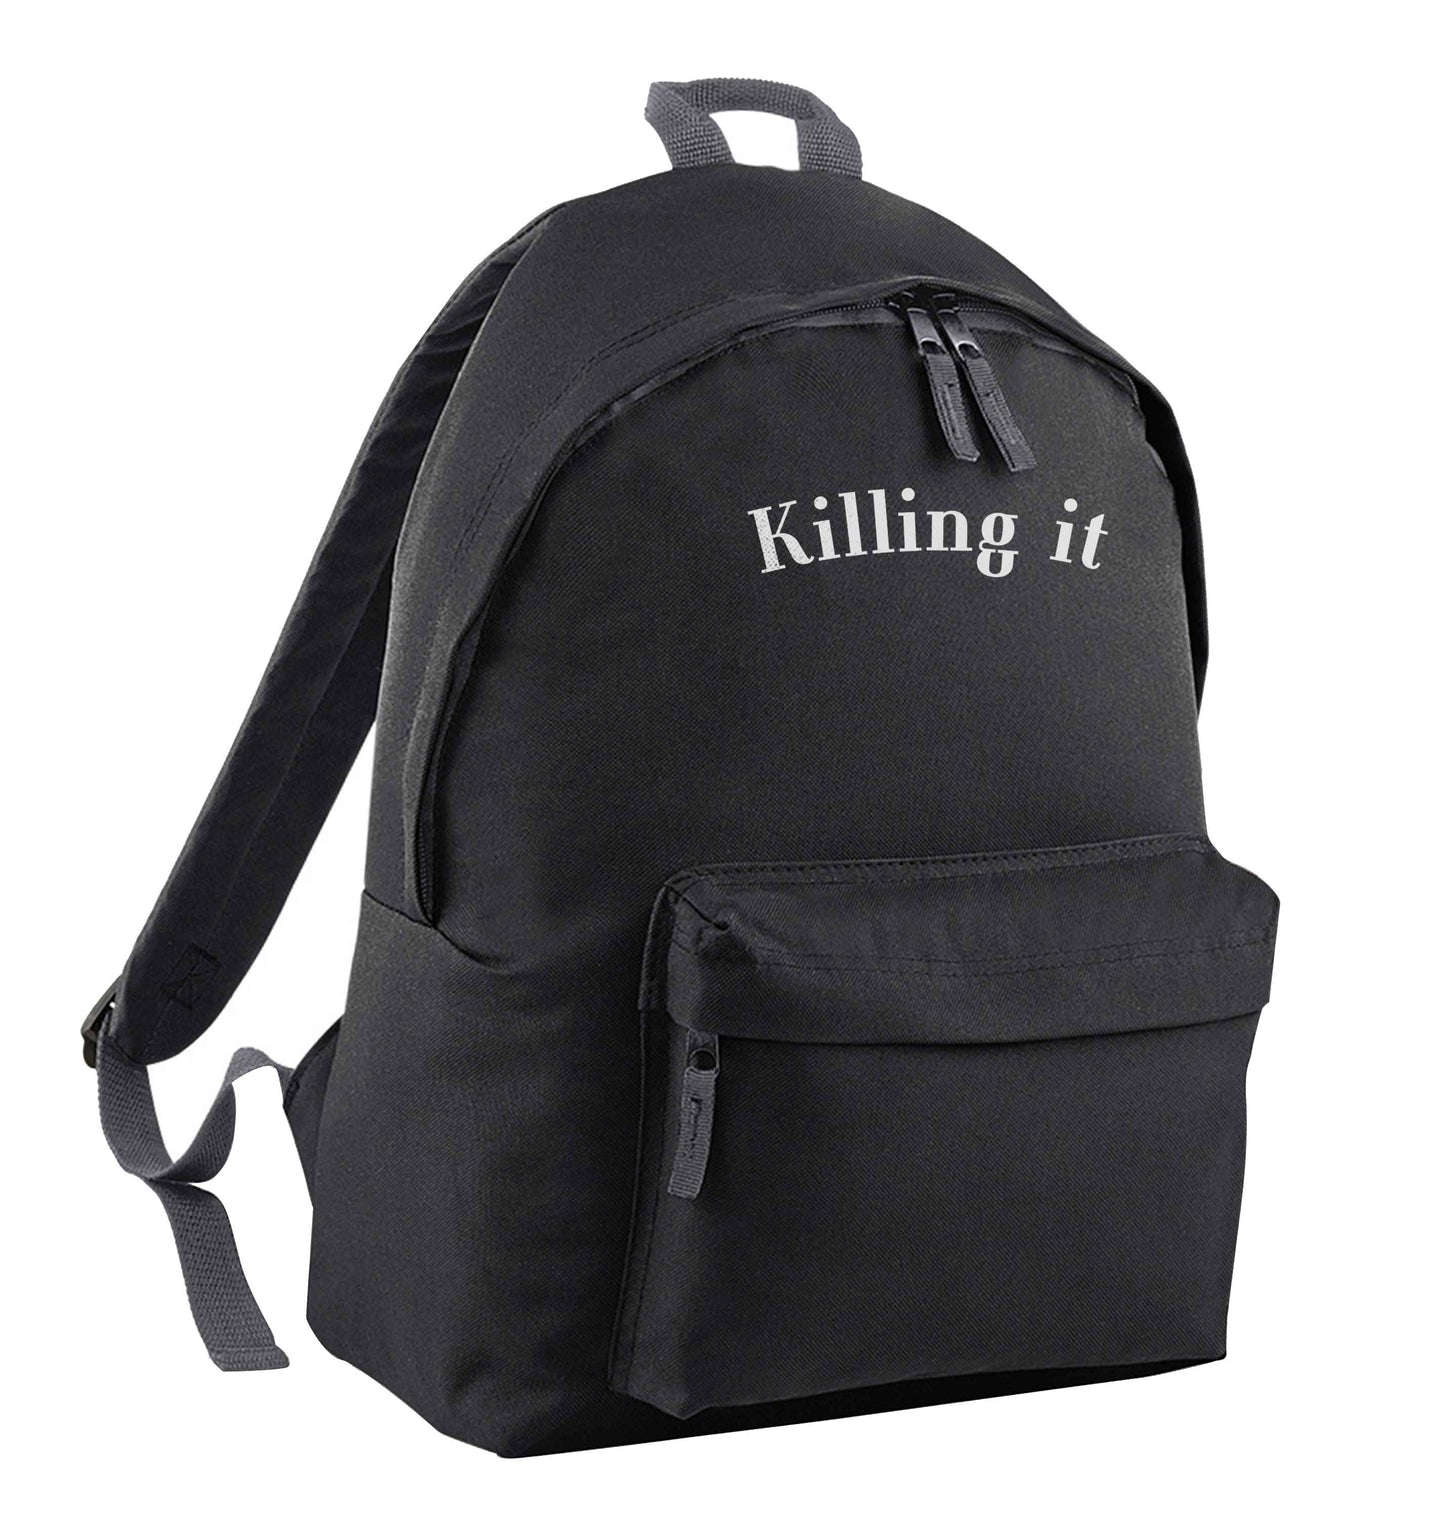 Killing it black children's backpack